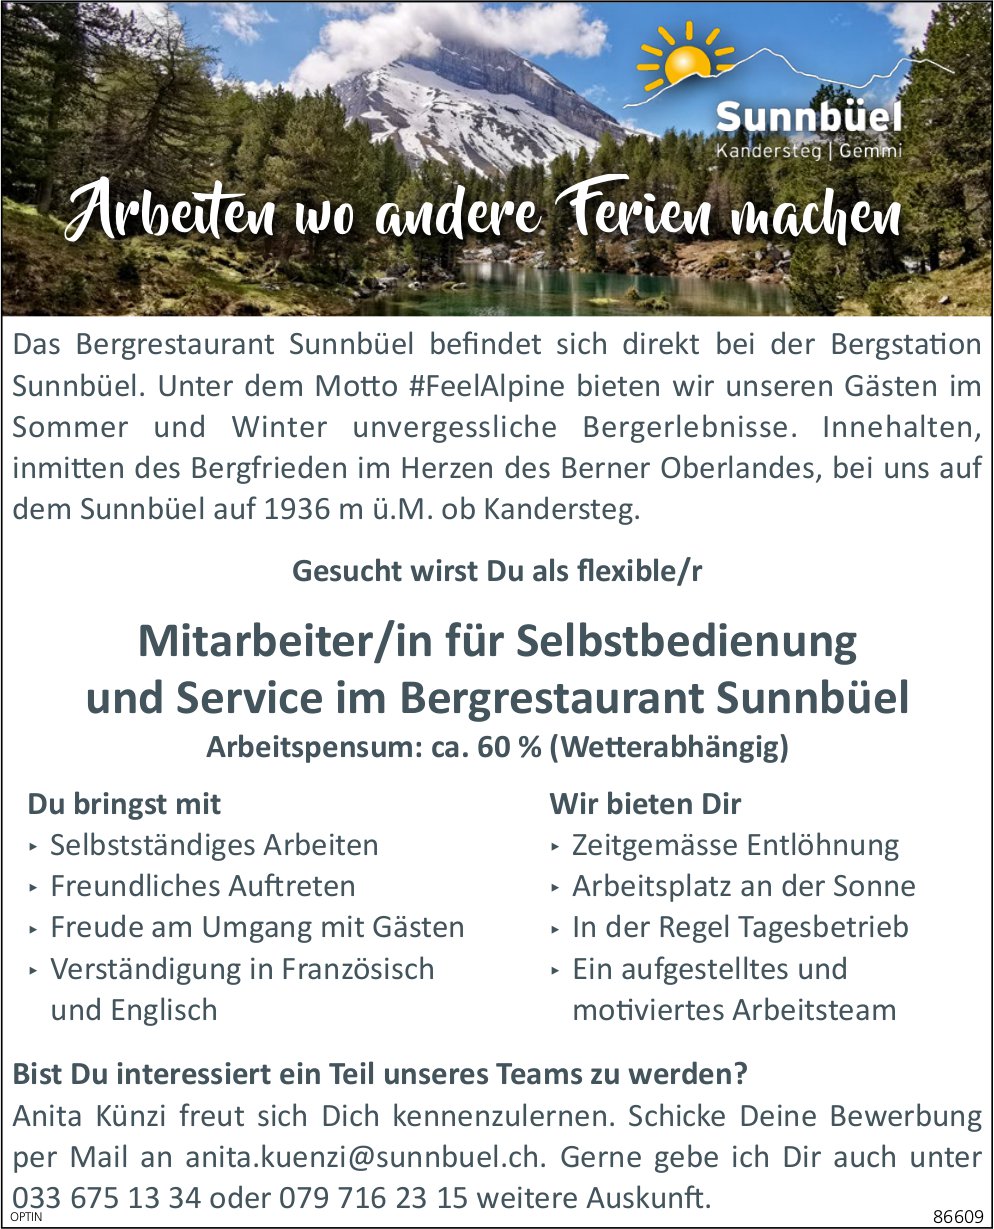 Mitarbeiter/in für Selbstbedienung und Service ca 60%, Bergrestaurant Sunnbüel, Kandersteg, gesucht